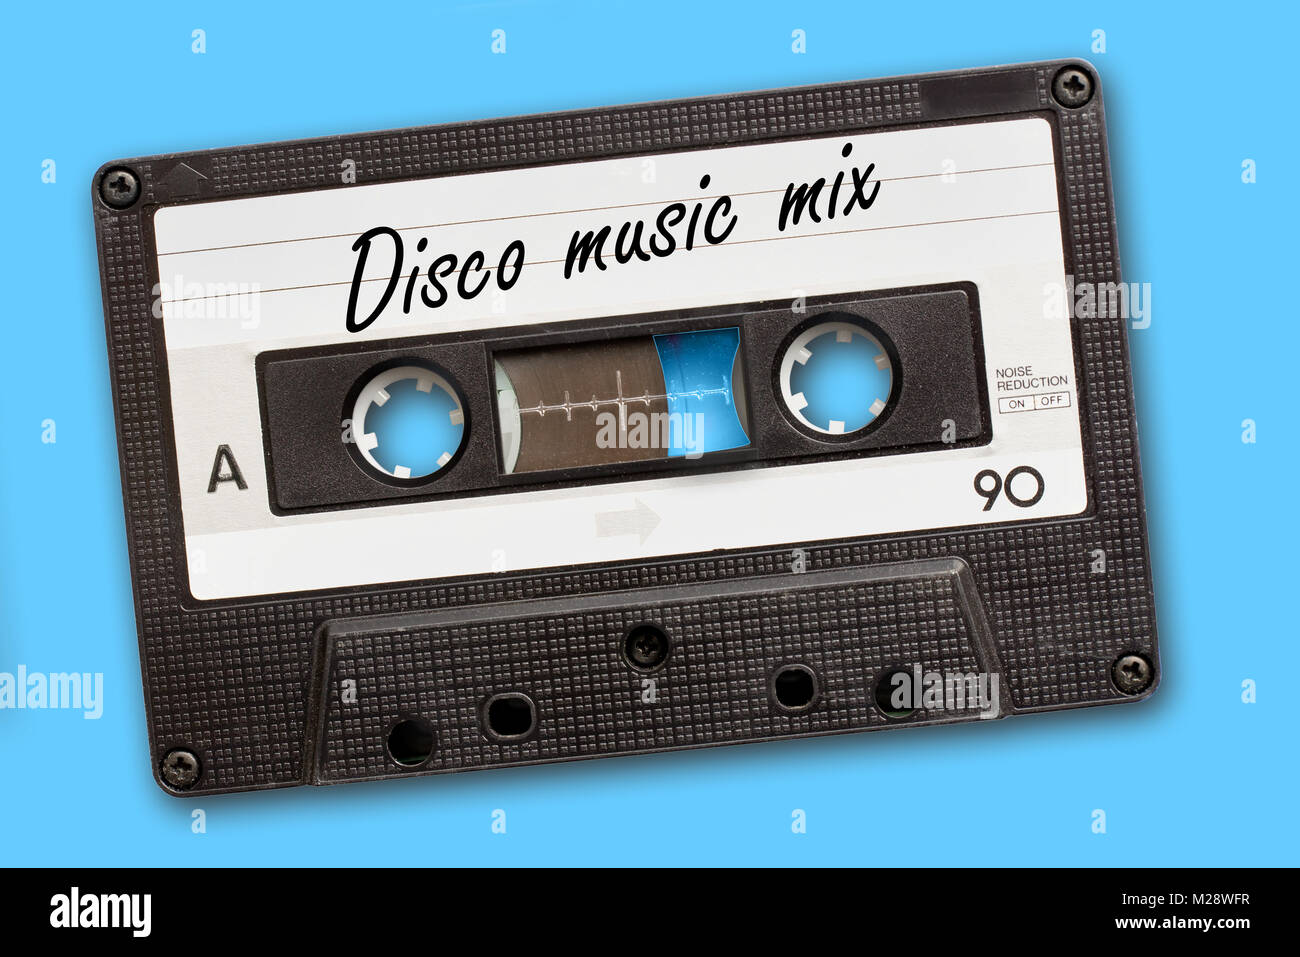 La musique Disco Mix écrit sur vintage cassette audio, sur fond bleu Banque D'Images